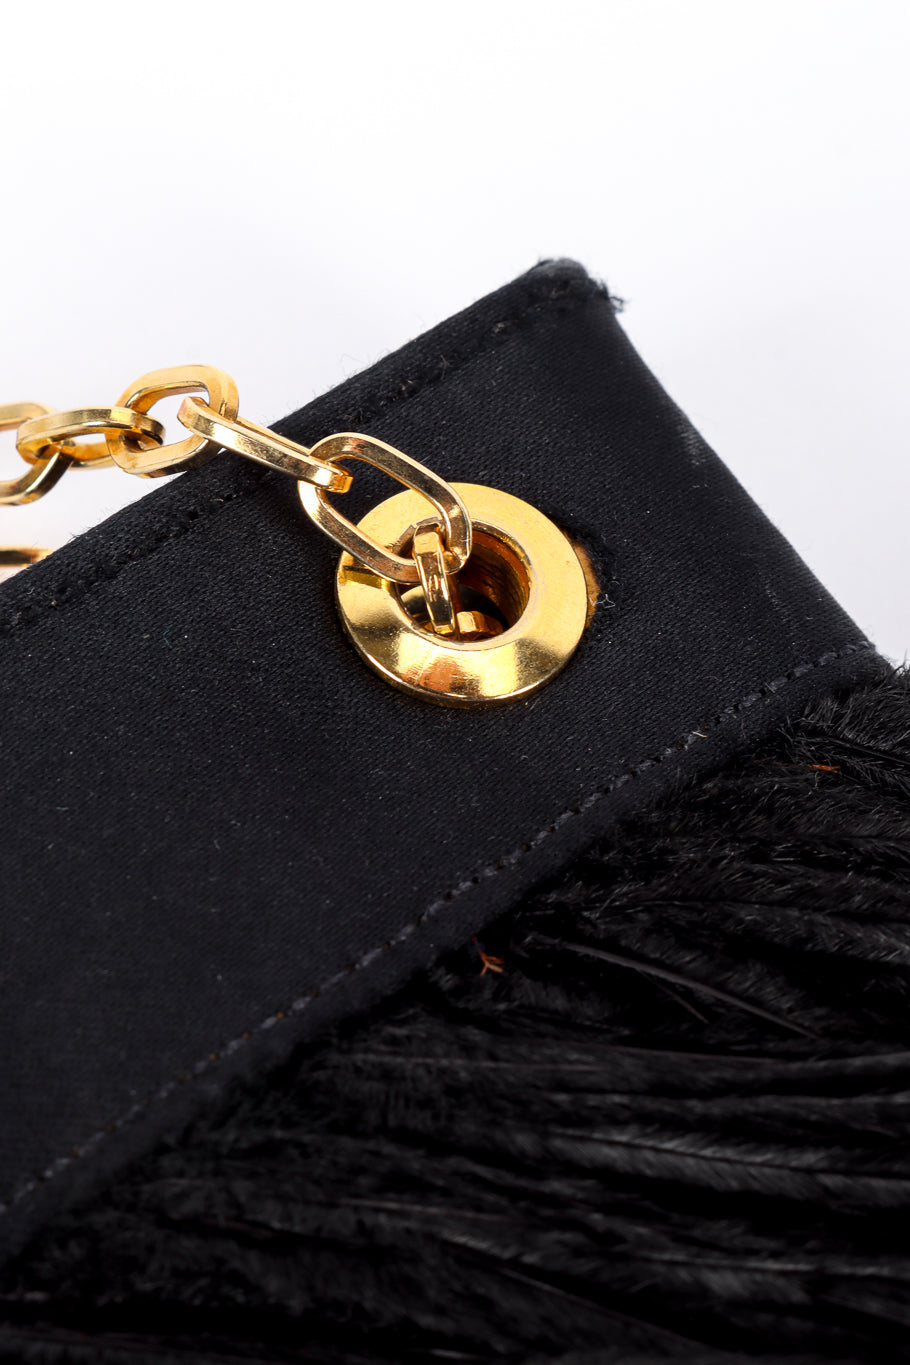 Vintage Adrienne Landau Black Feather Gold Chain Evening Bag details @Recess LA